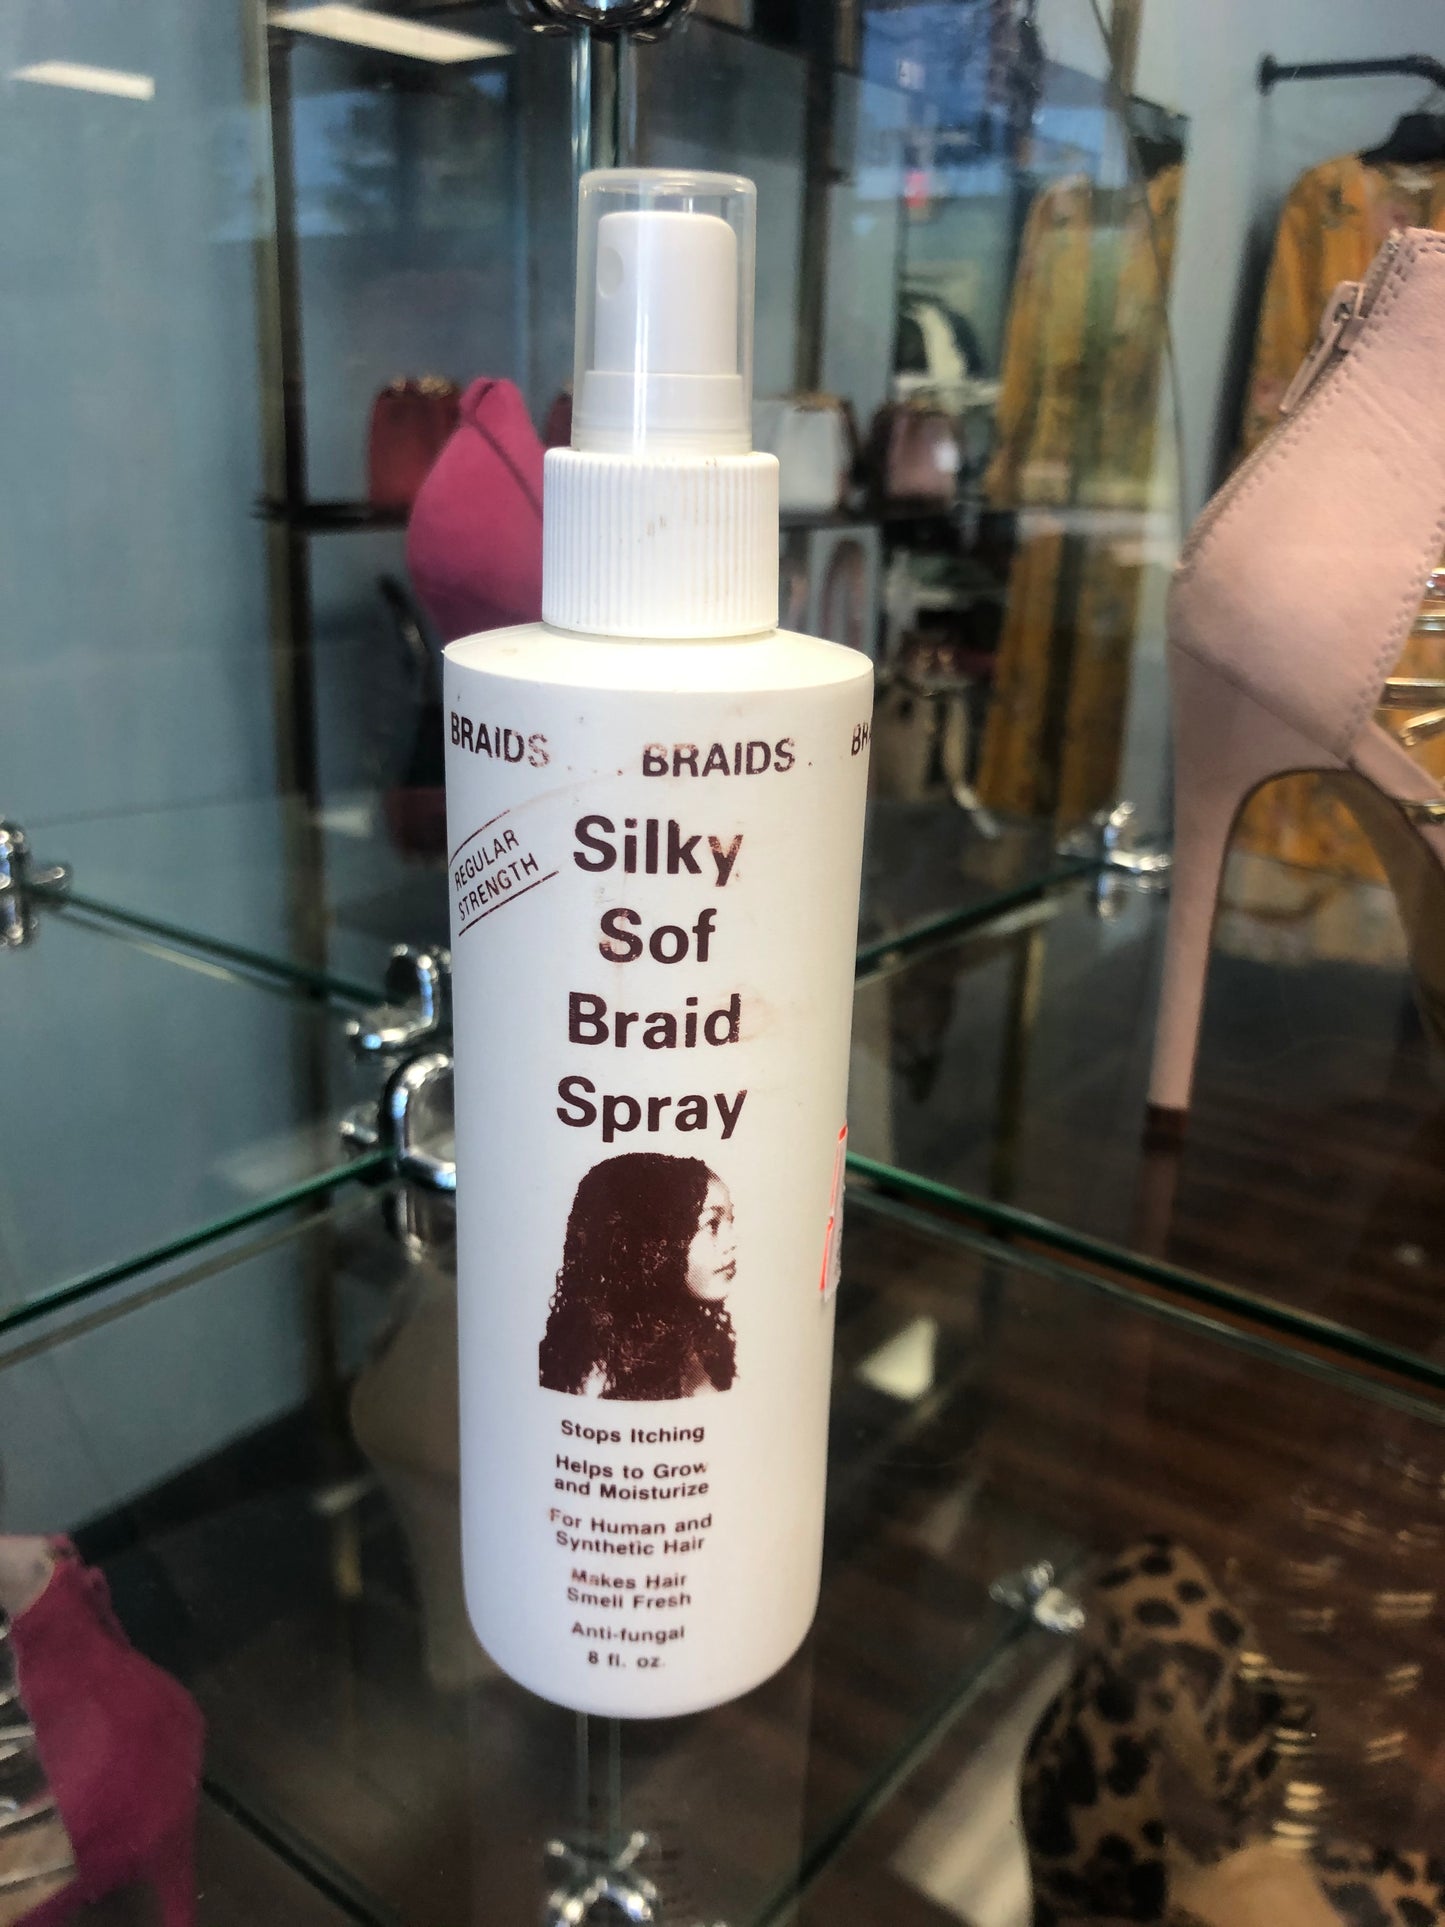 Silky Sof Braid Spray